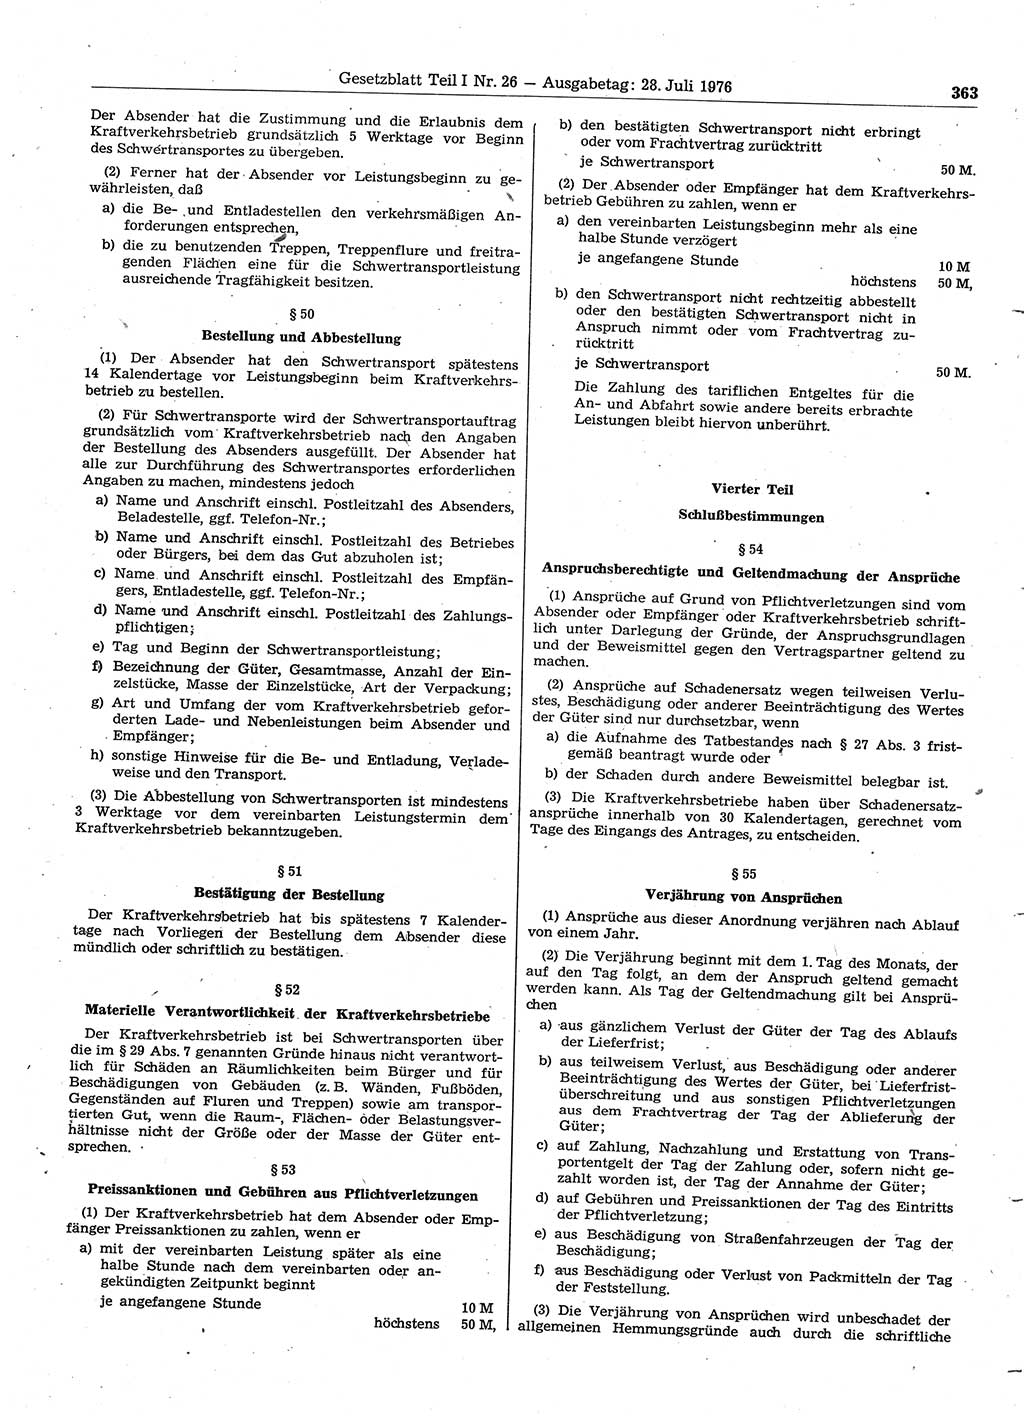 Gesetzblatt (GBl.) der Deutschen Demokratischen Republik (DDR) Teil Ⅰ 1976, Seite 363 (GBl. DDR Ⅰ 1976, S. 363)